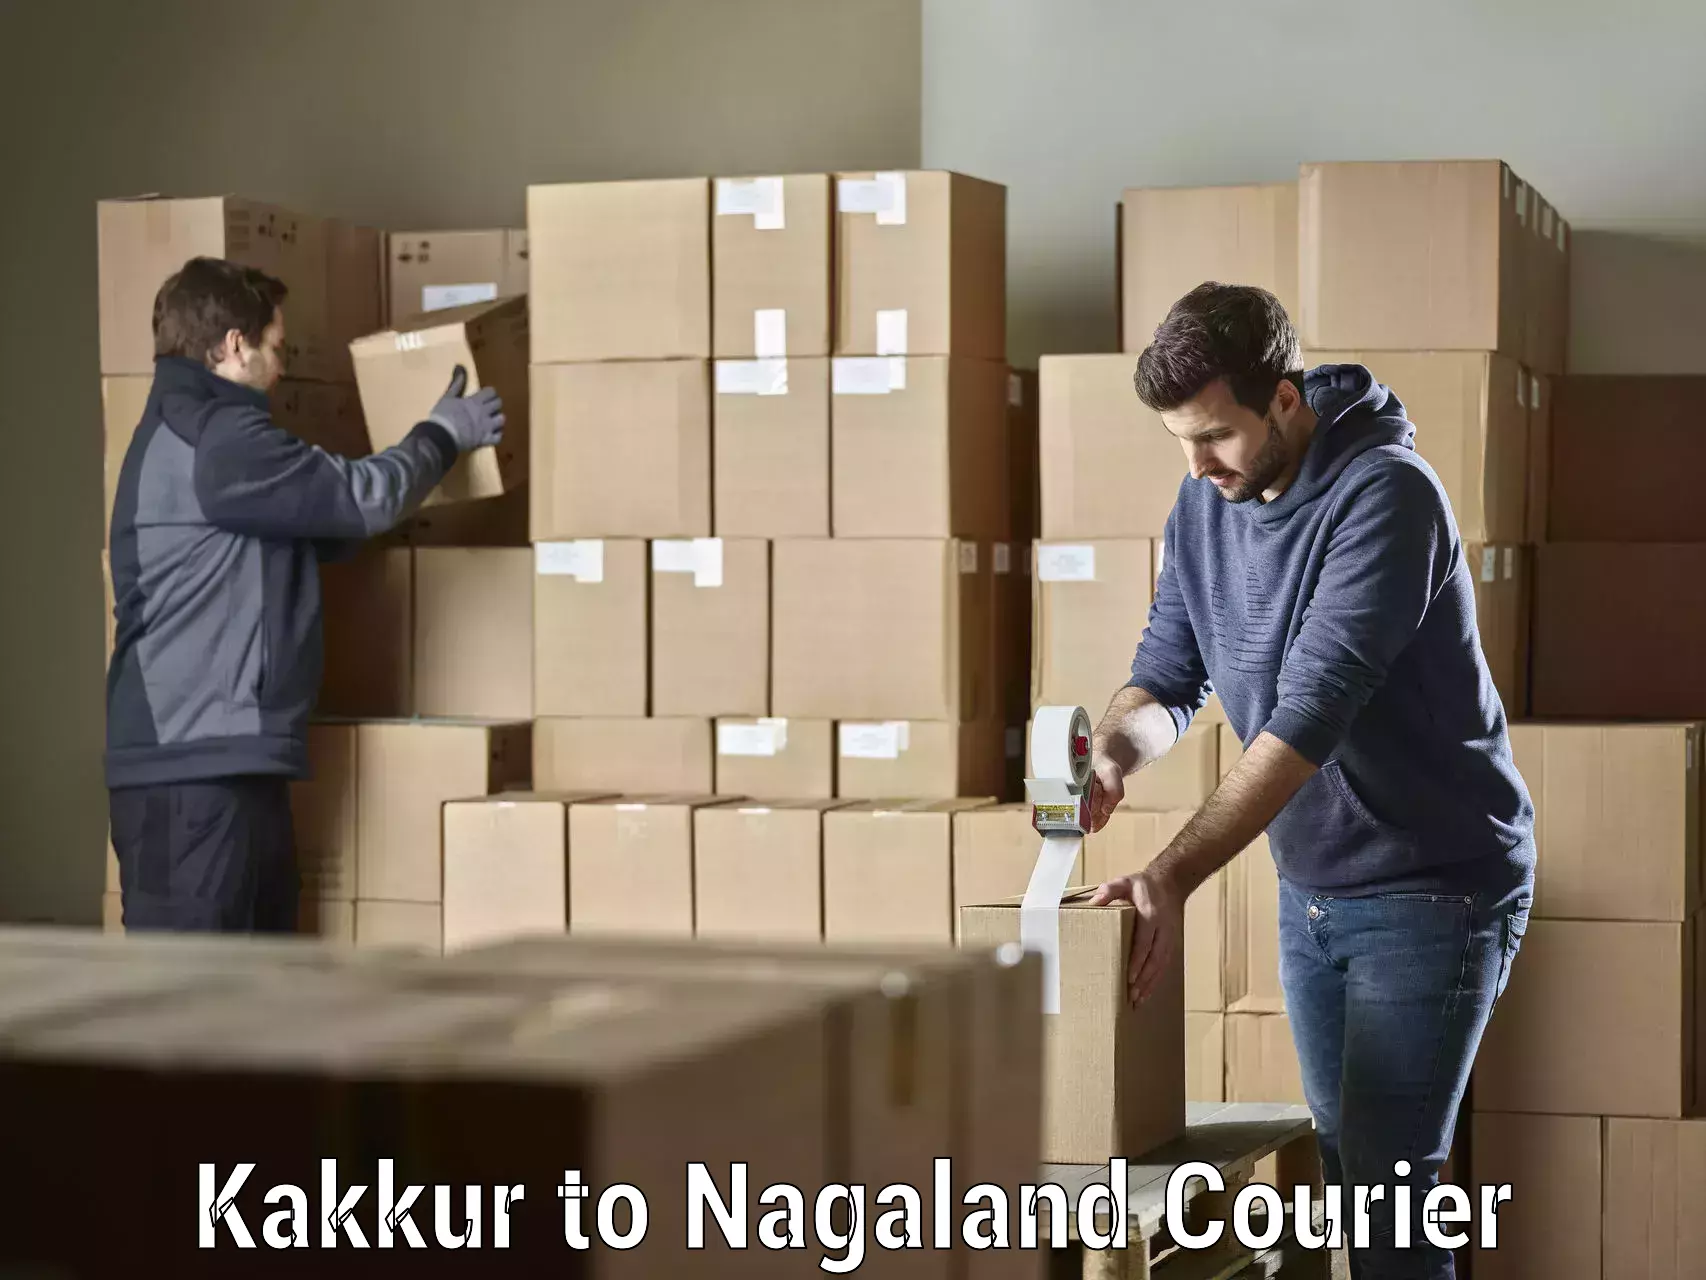 Professional parcel services Kakkur to Kohima